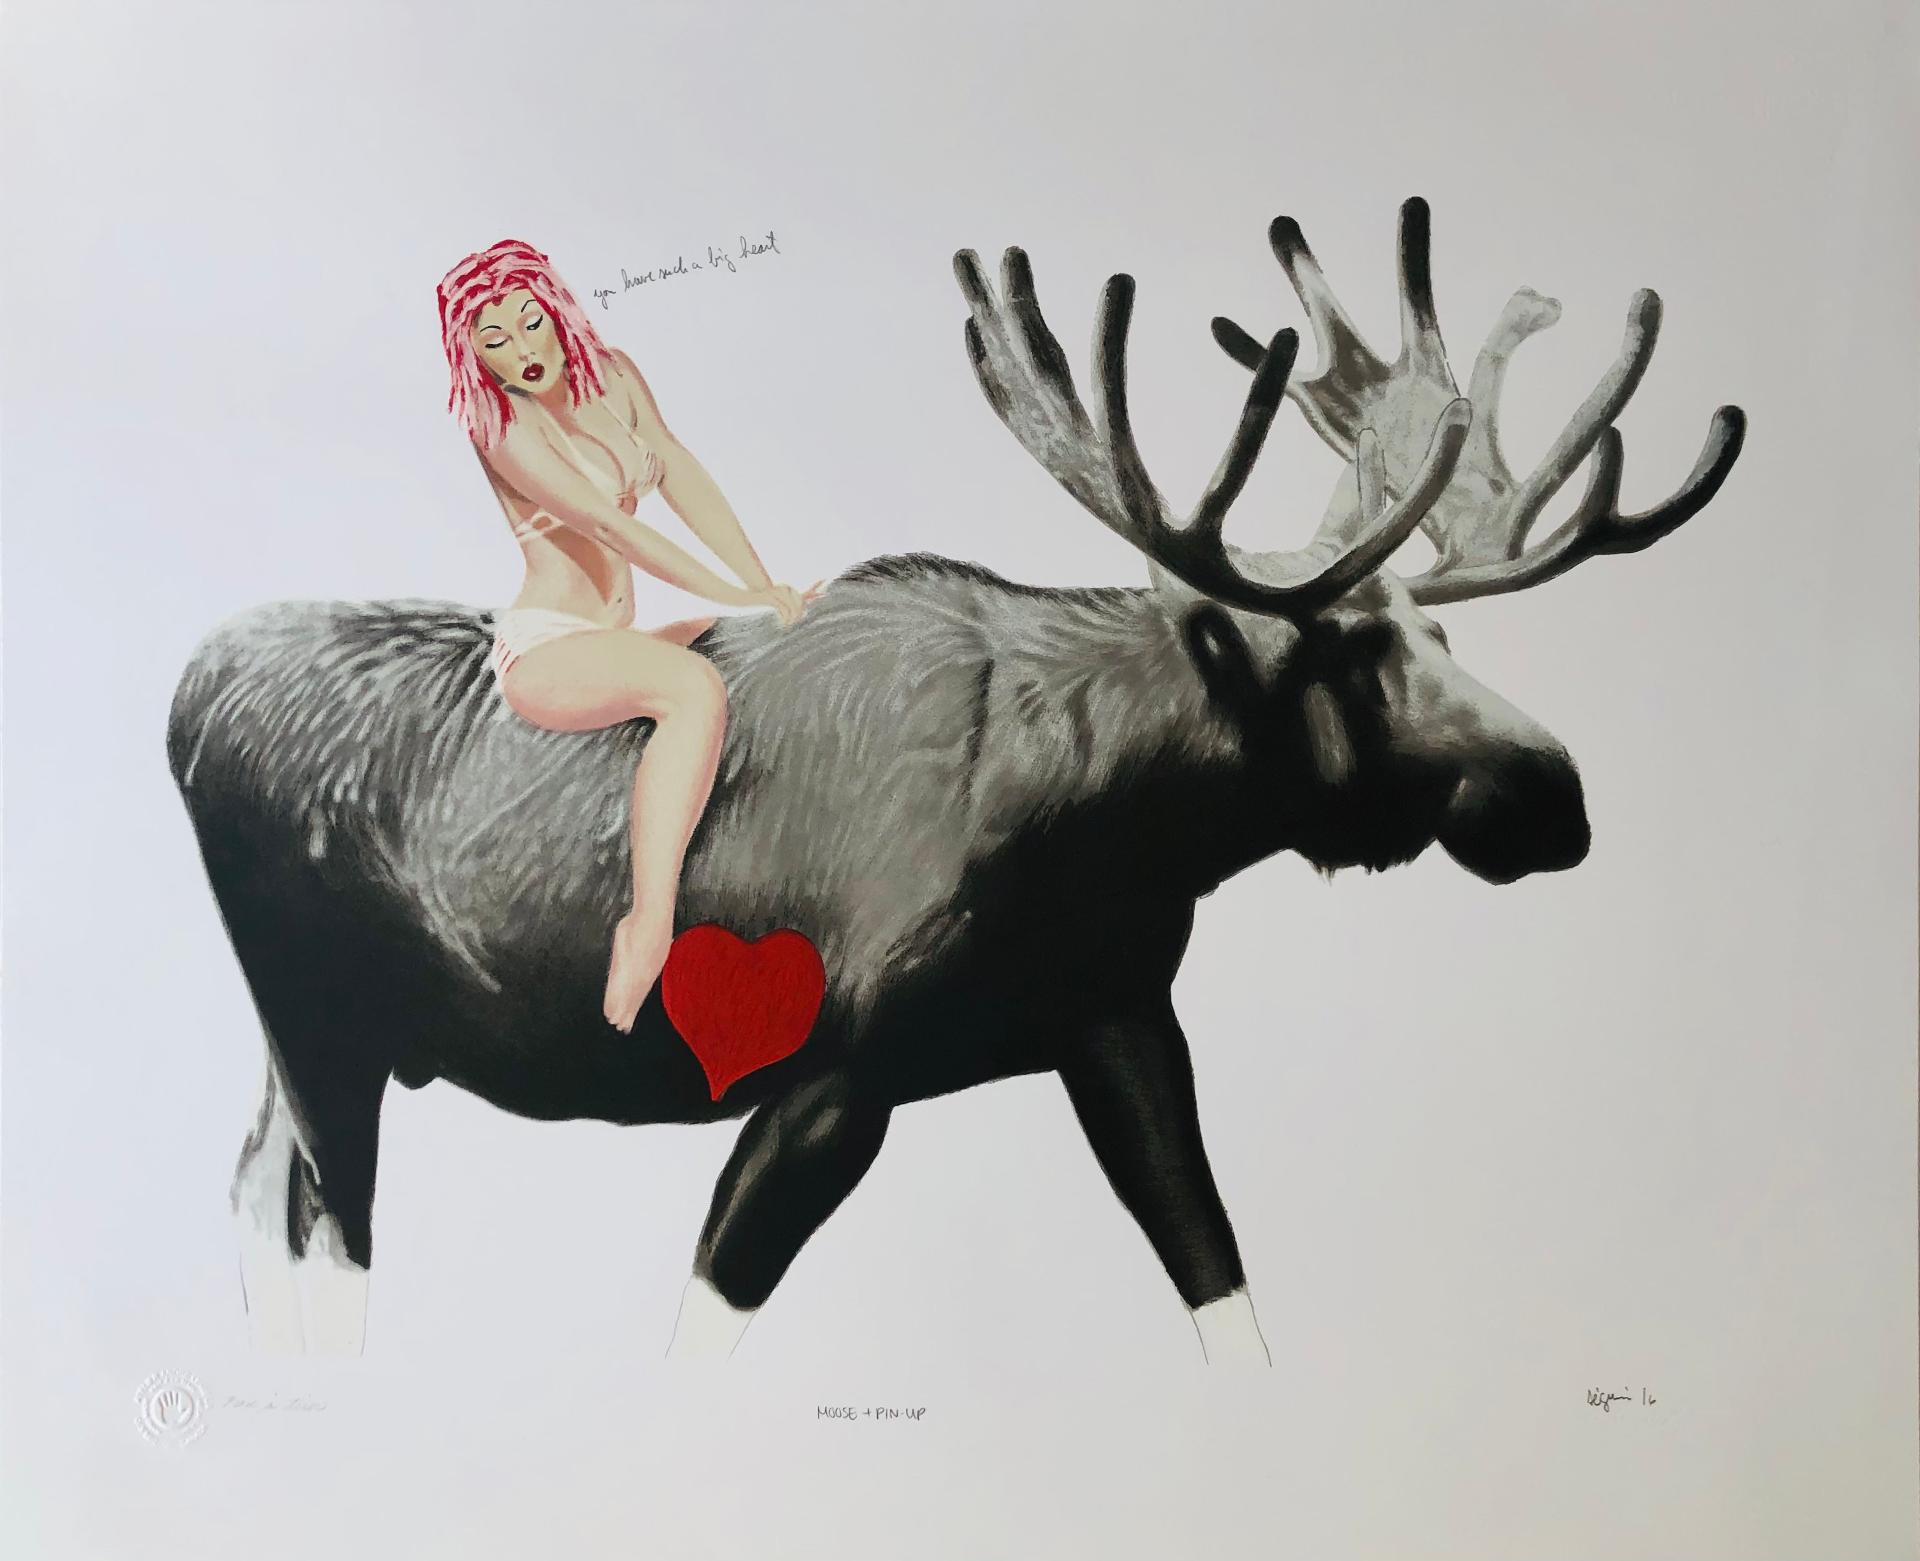 Marc Séguin (1970) - Moose + Pin-Up, 2016